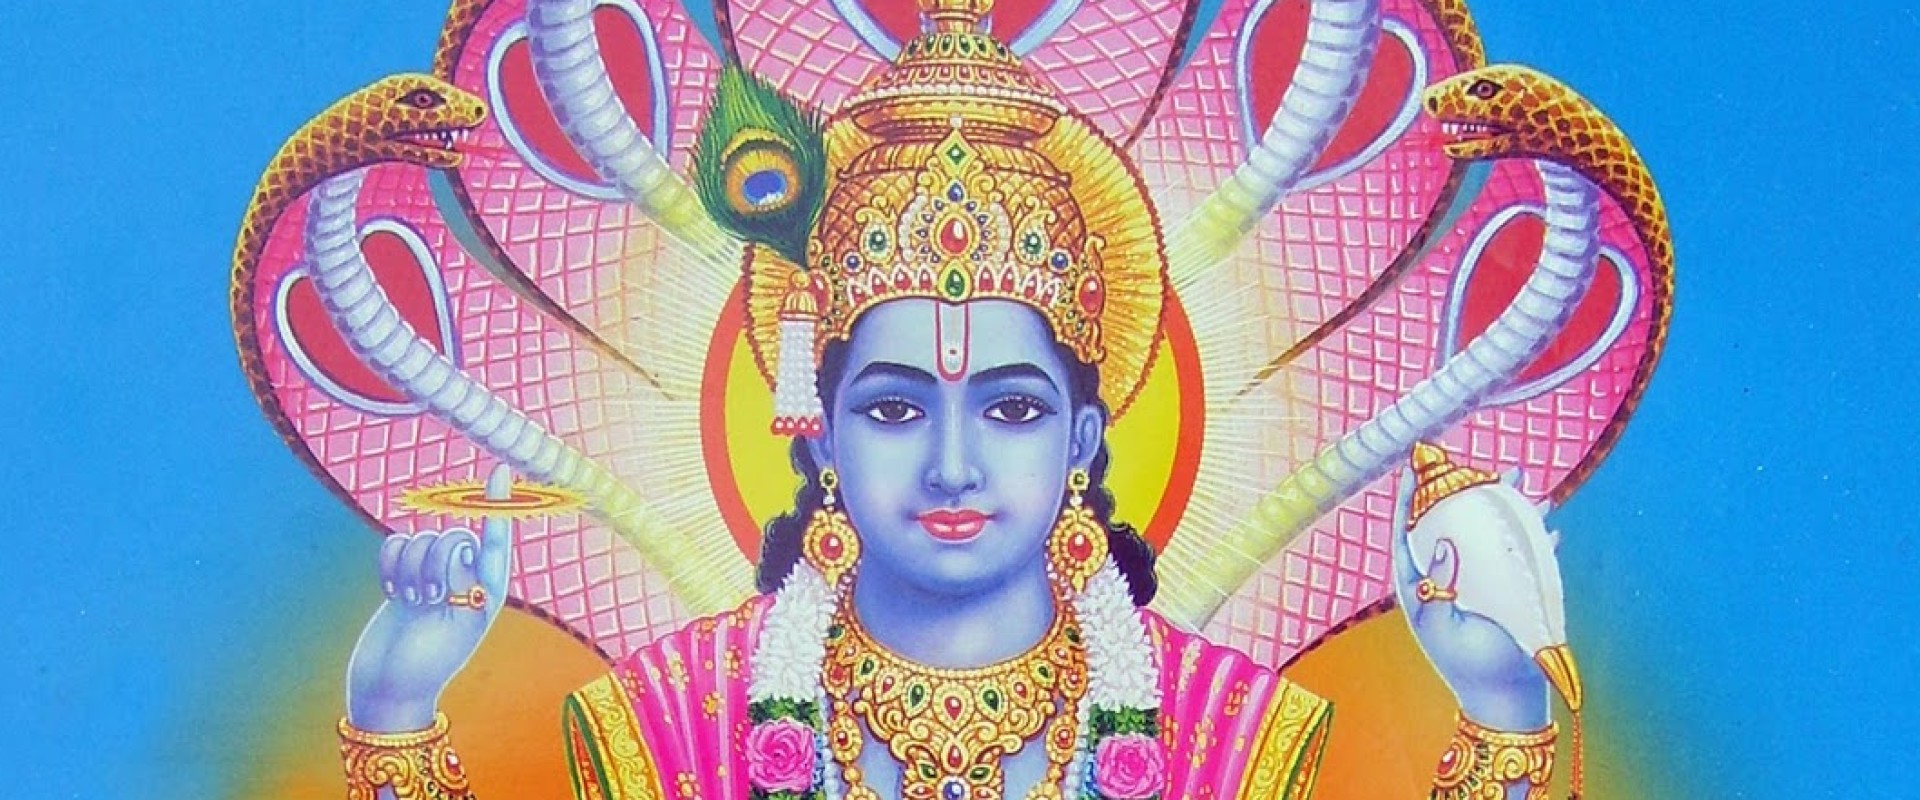 Lichtmeester Vishnu vertelt over onze aarde